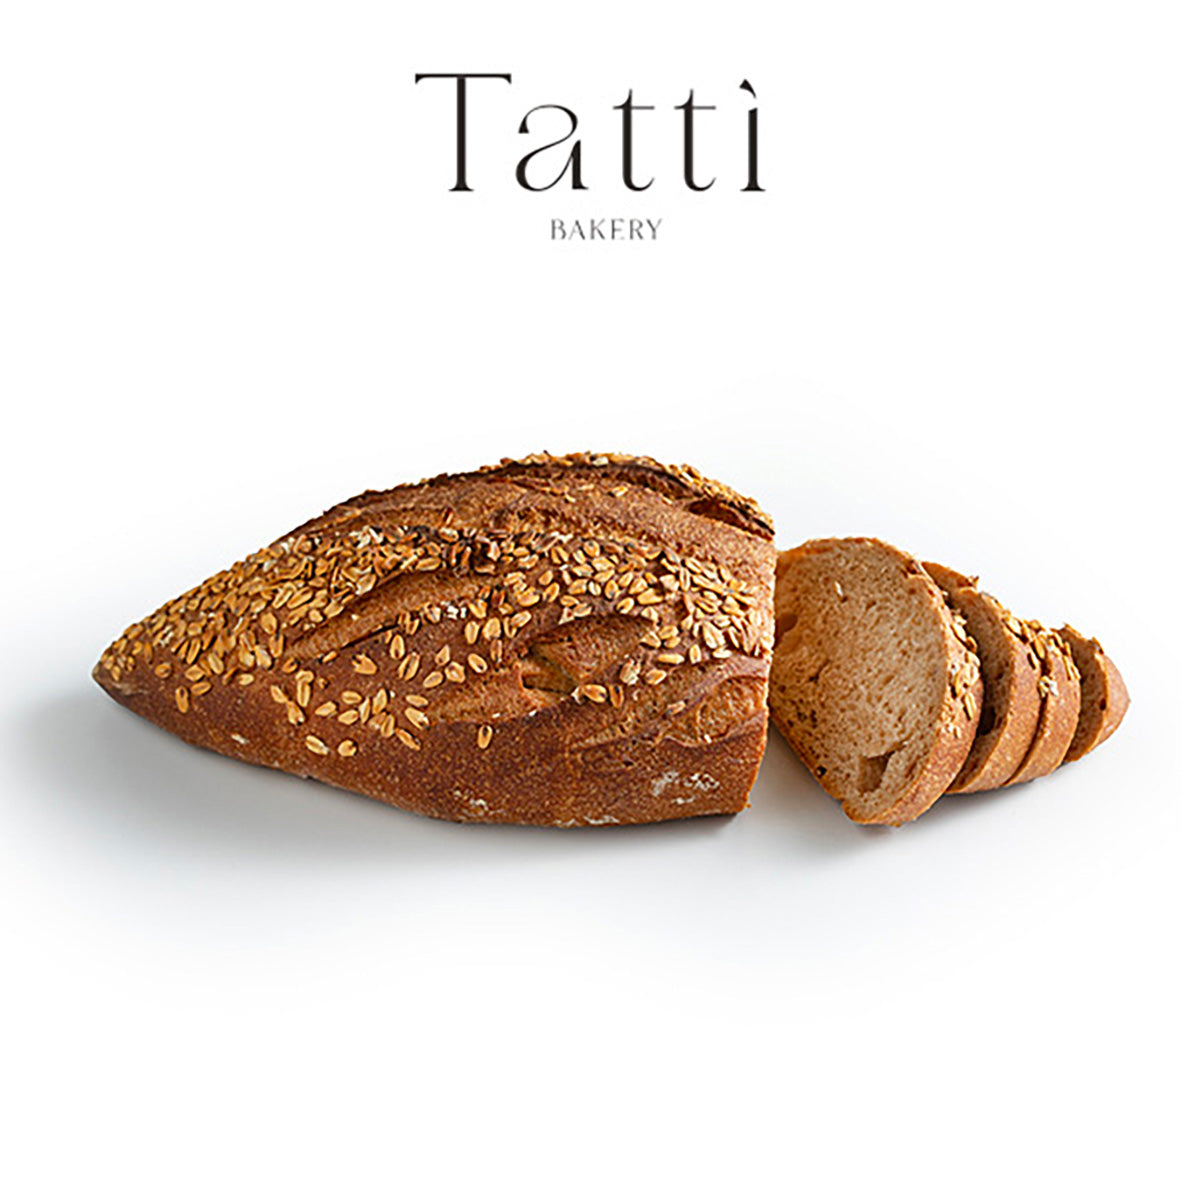 לחם כוסמין מלא פרוס - Tatti bakery